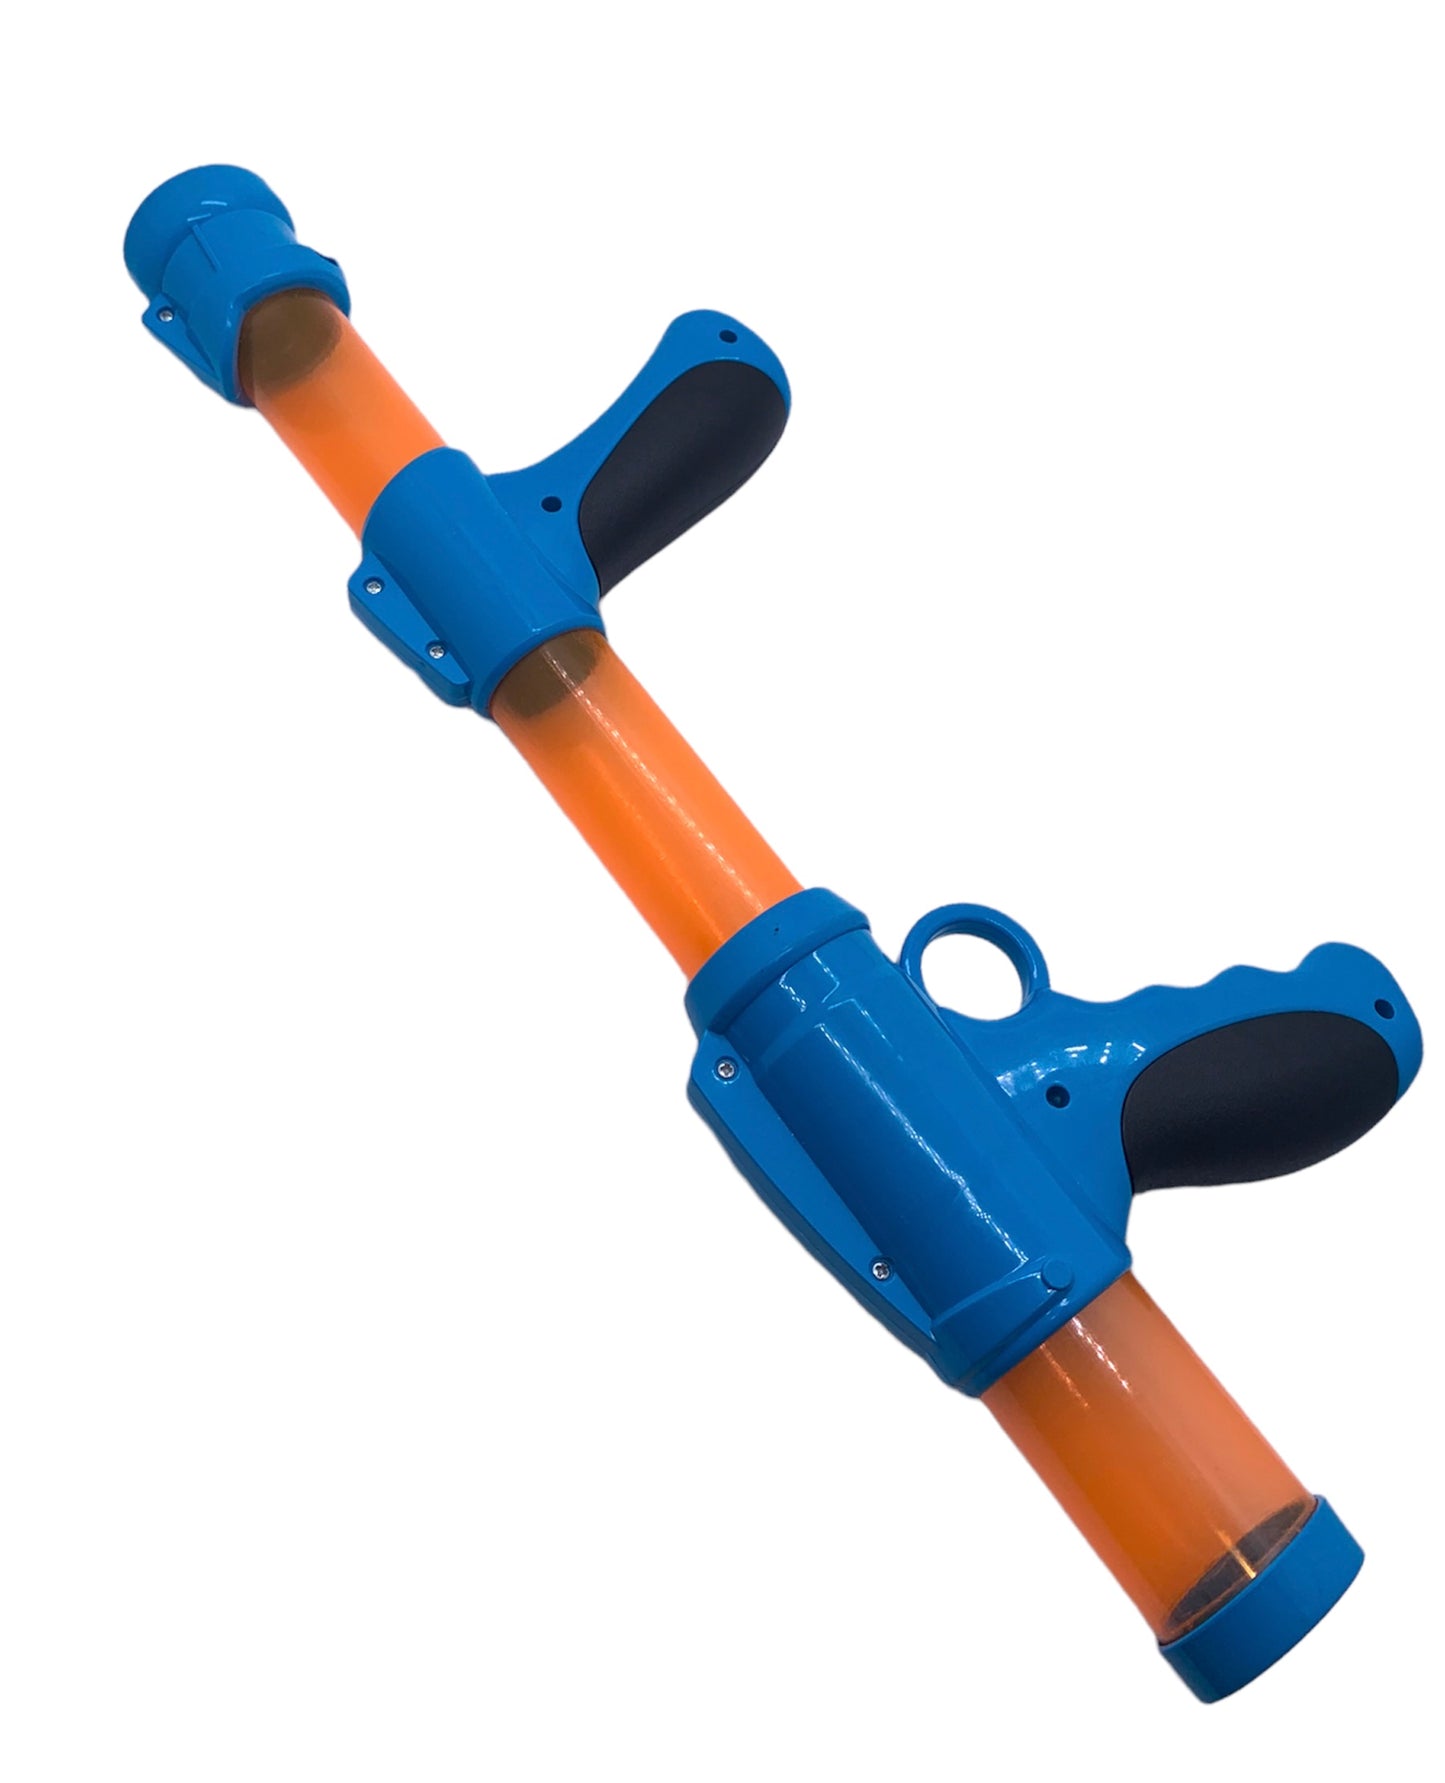 Power Pump Action Popper Air Foam Ball Gun Shooter Toy